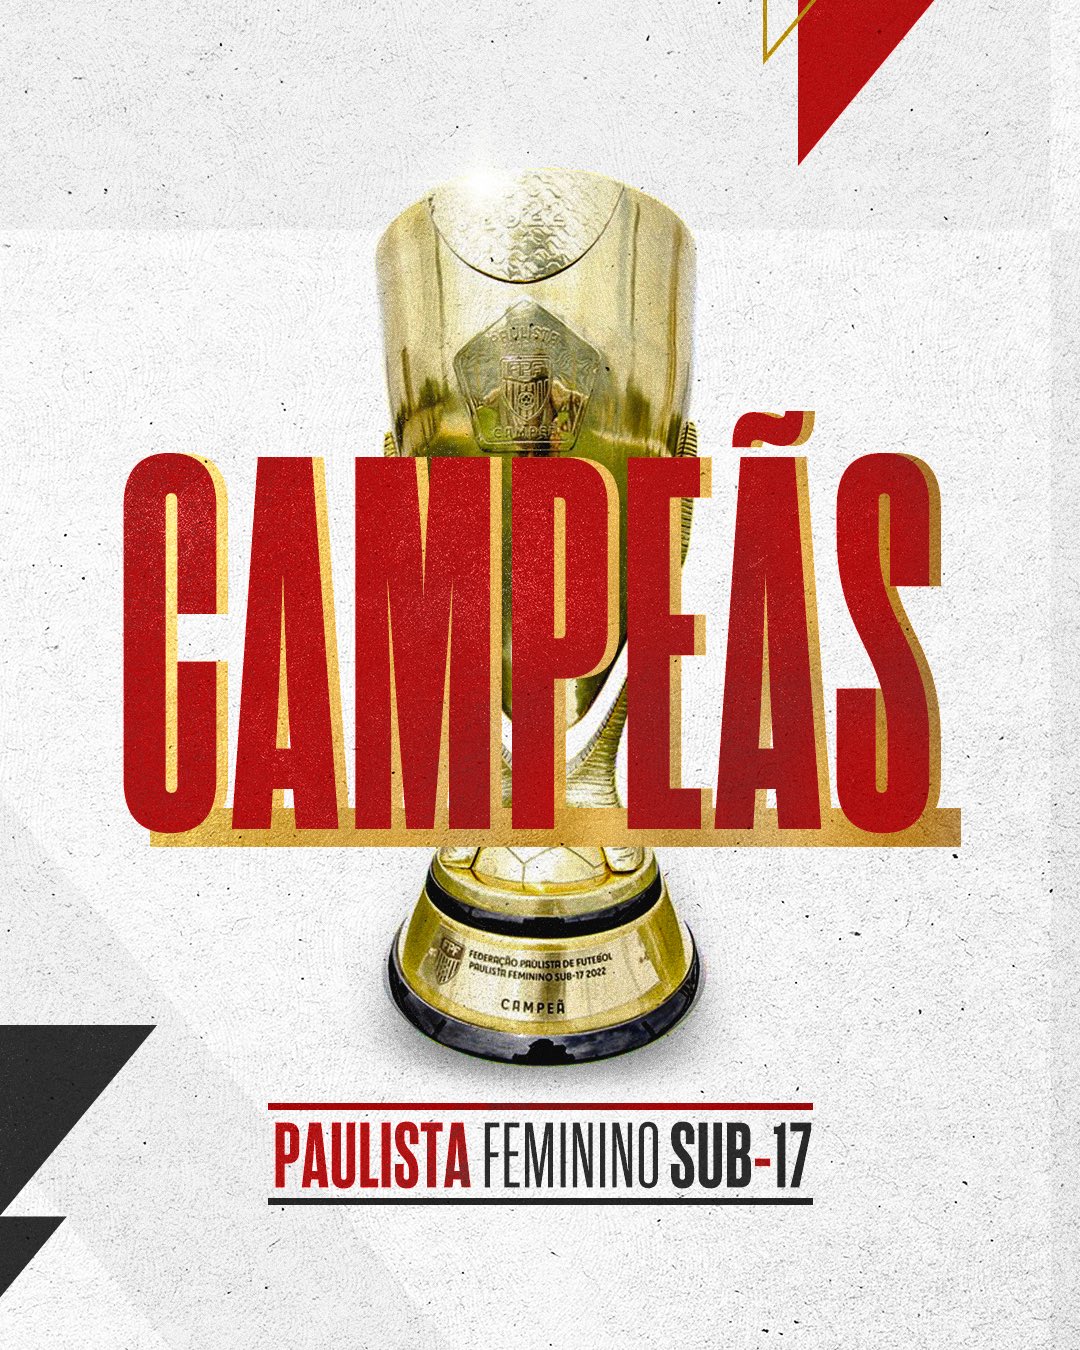 São Paulo conquista o hexacampeonato Paulista Feminino Sub-17 - SPFC